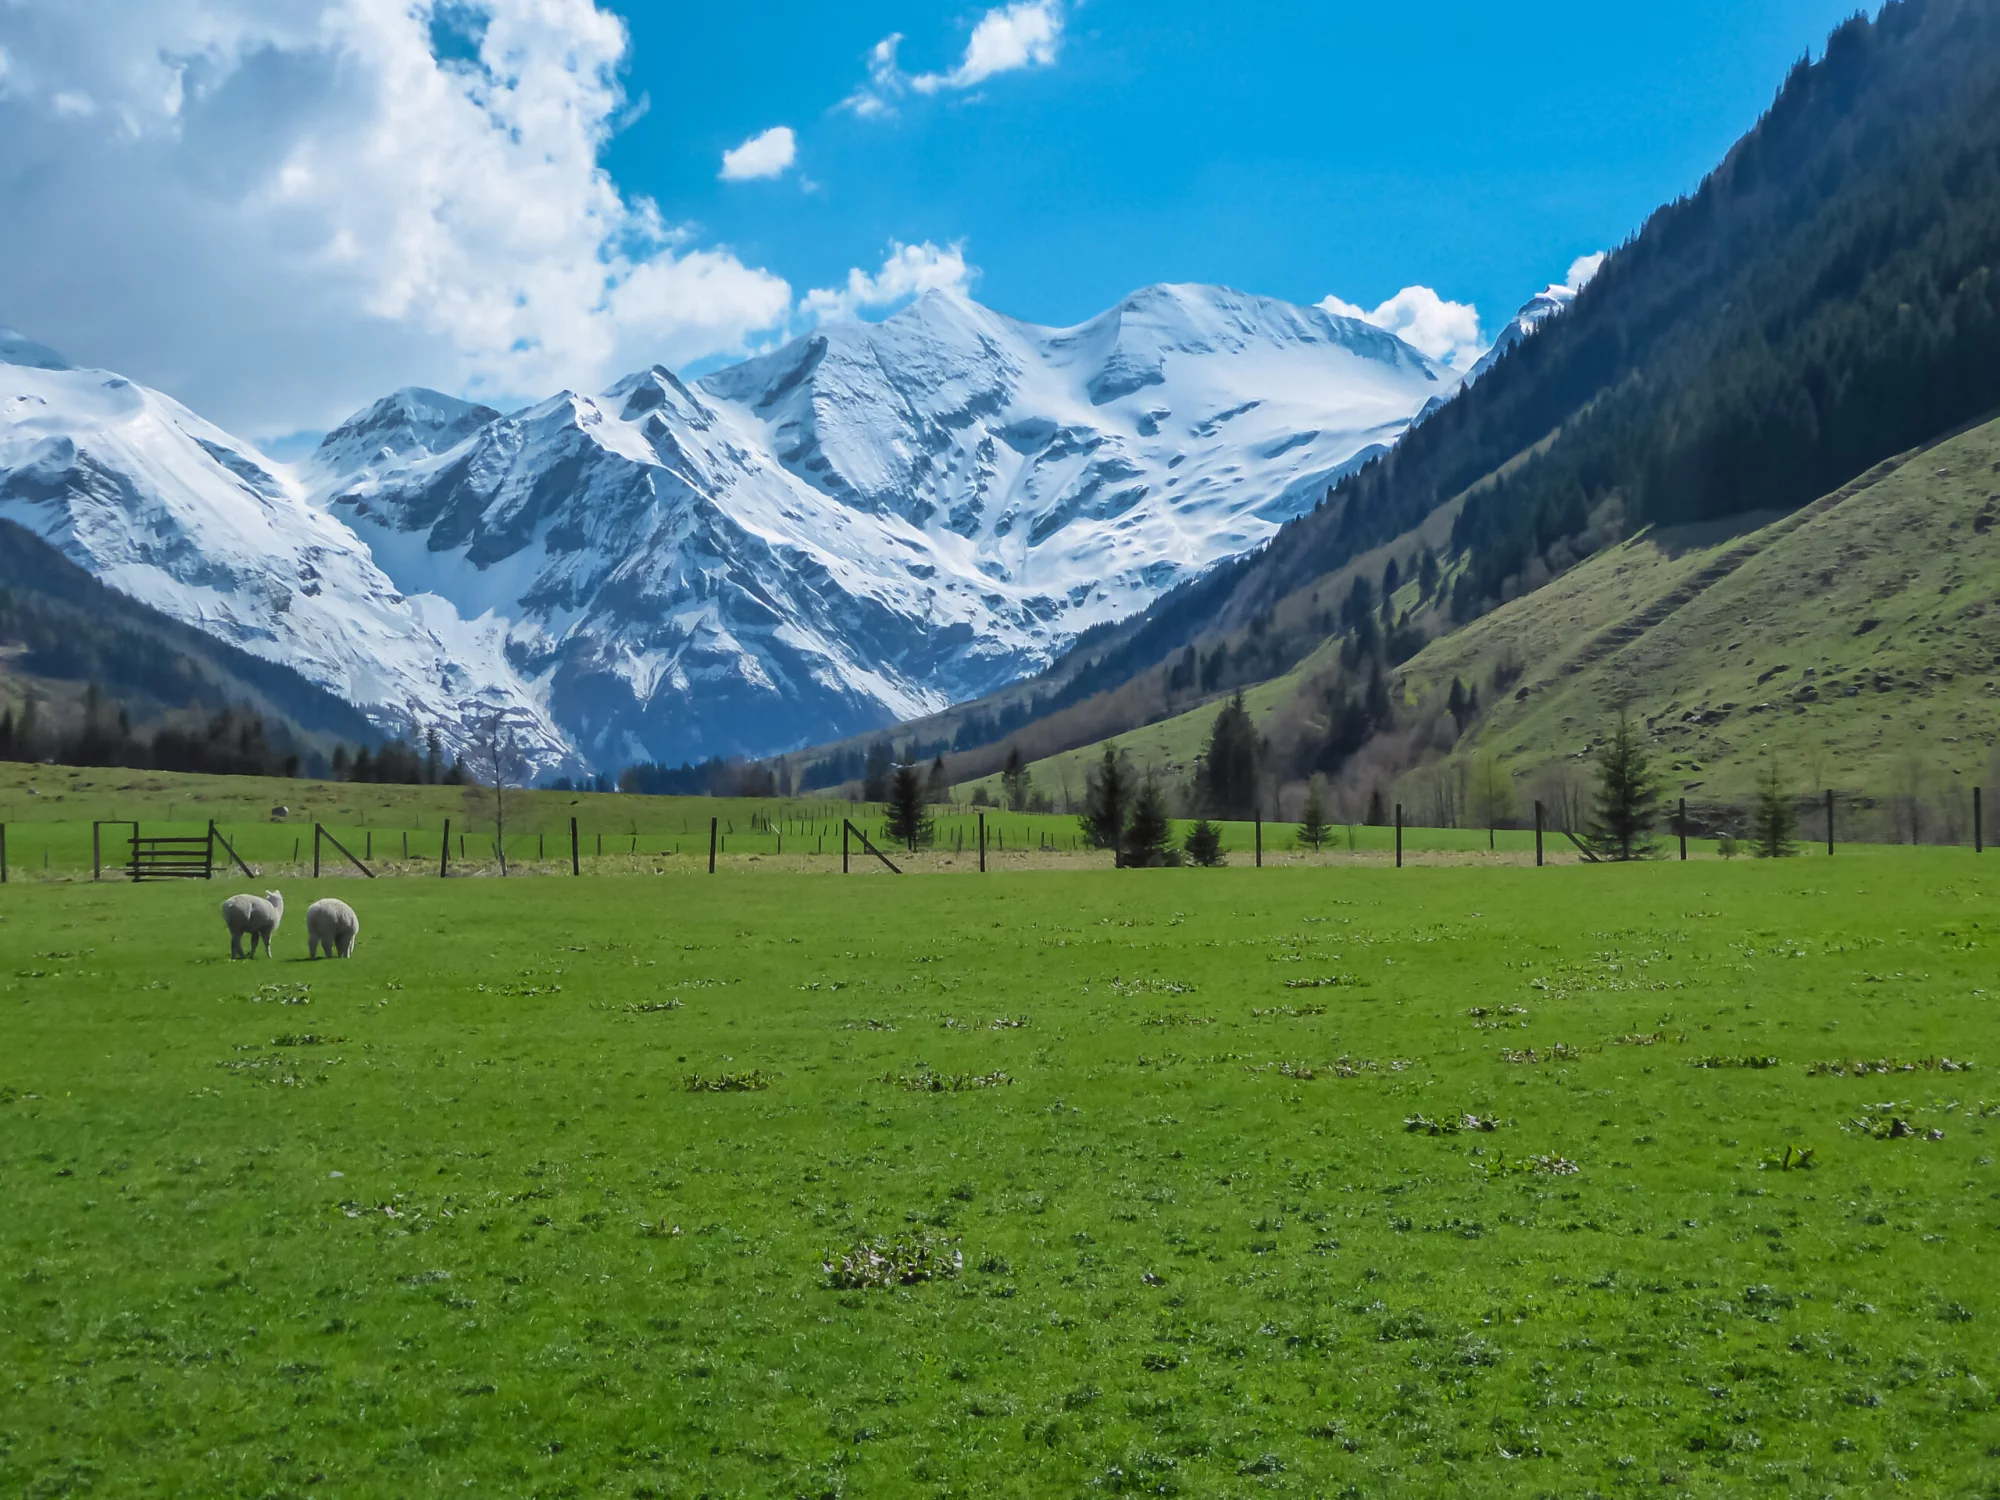 Lampaat laiduntavat vehreällä alppiniityllä, josta avautuu panoraamanäkymä lumen peittämille High Tauernin vuorenhuipuille Fusch am Grossglocknerissa, Salzburgissa, Itävallassa. Kaunis luonto Itävallan syrjäisillä Alpeilla